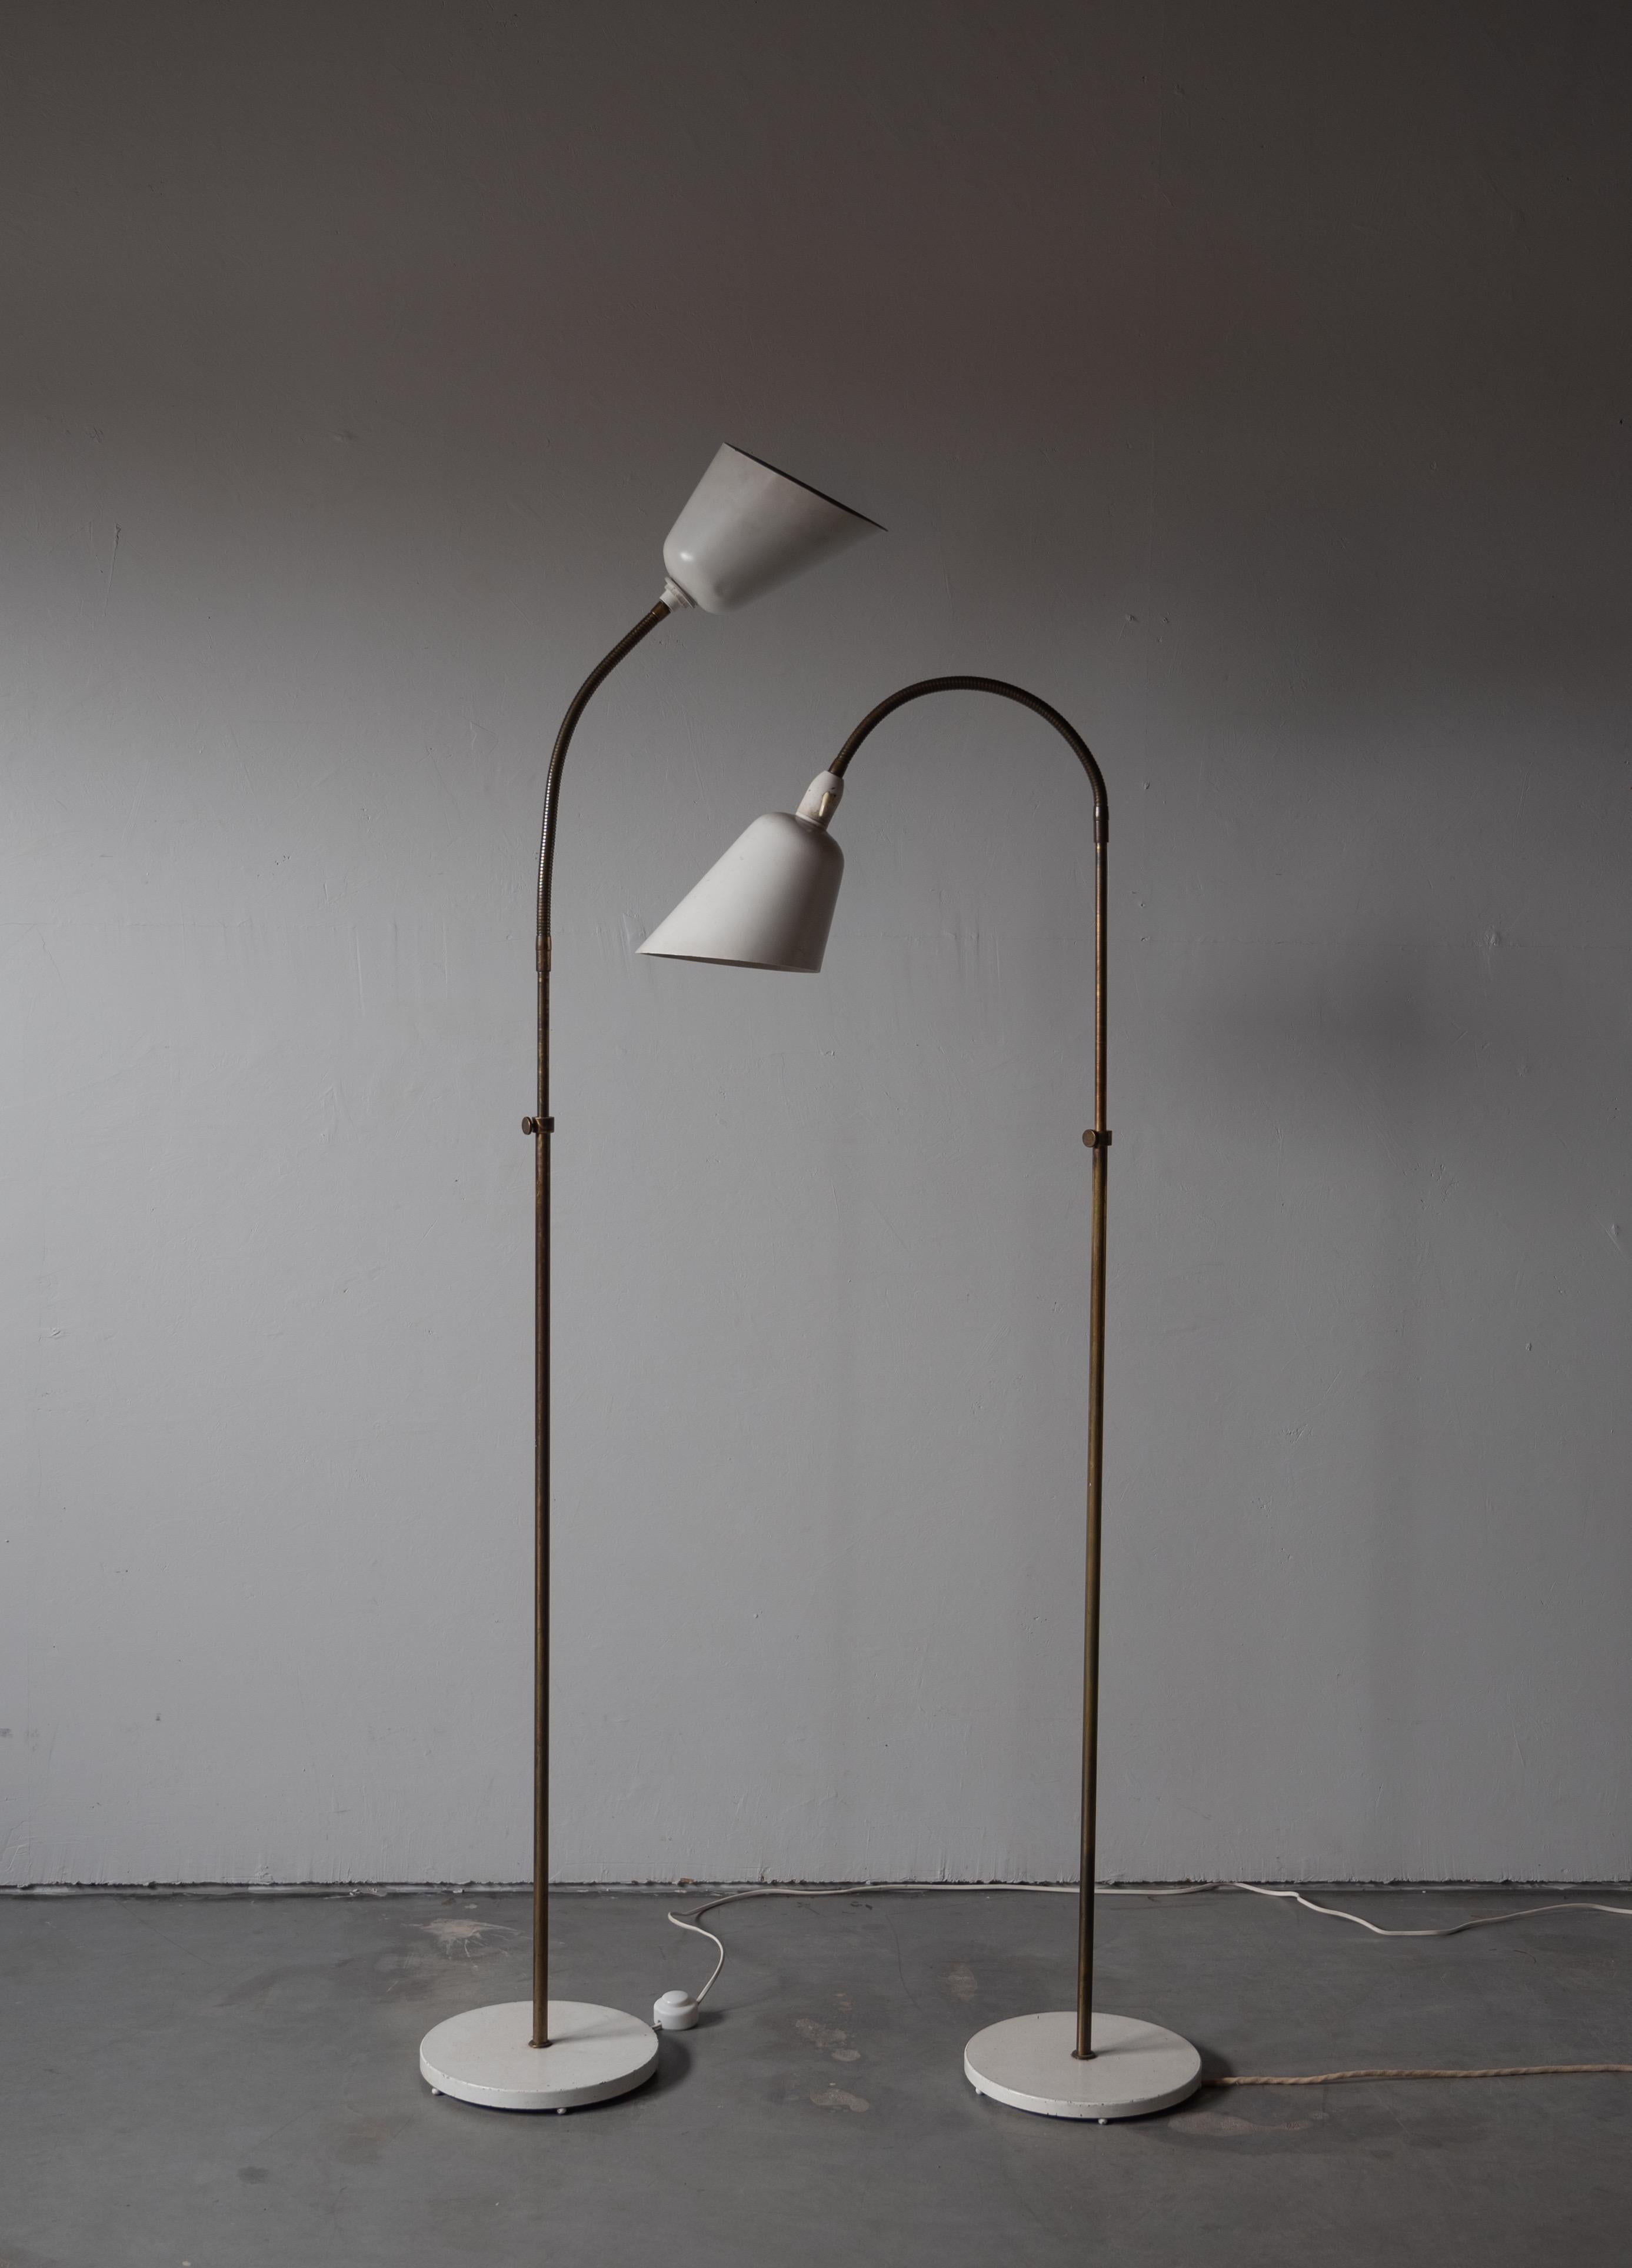 Scandinavian Modern Arne Jacobsen, Adjustable Floor Lamps, Brass, Lacquered Metal, Denmark, 1929